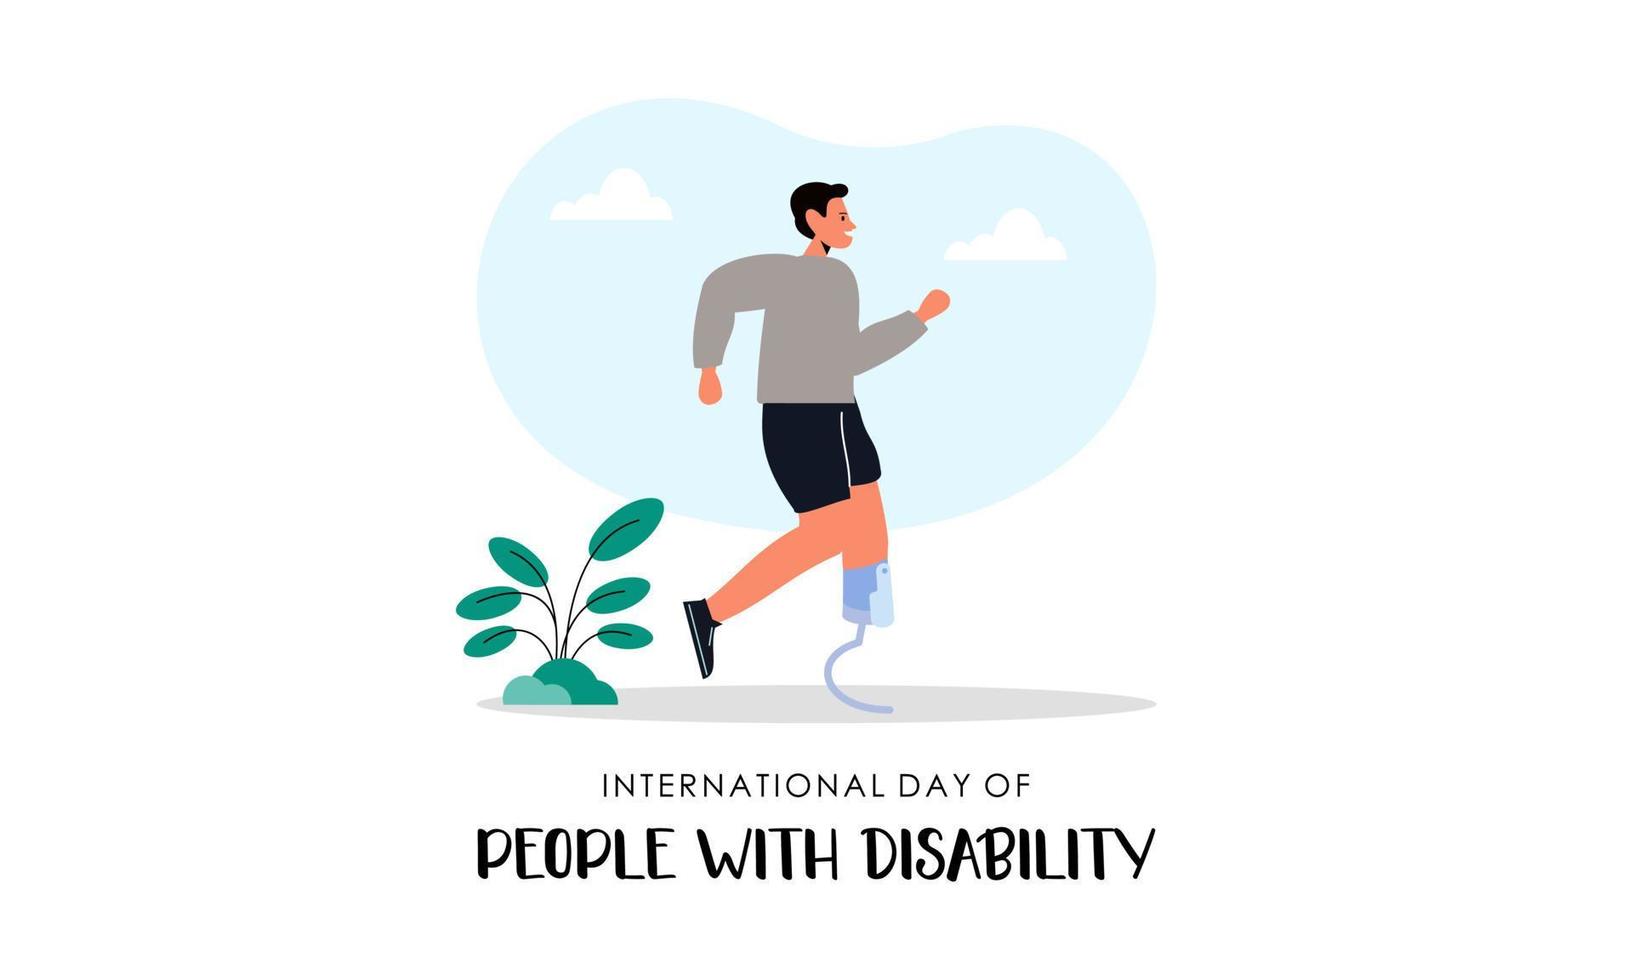 vetor de ilustração do dia mundial da paralisia cerebral